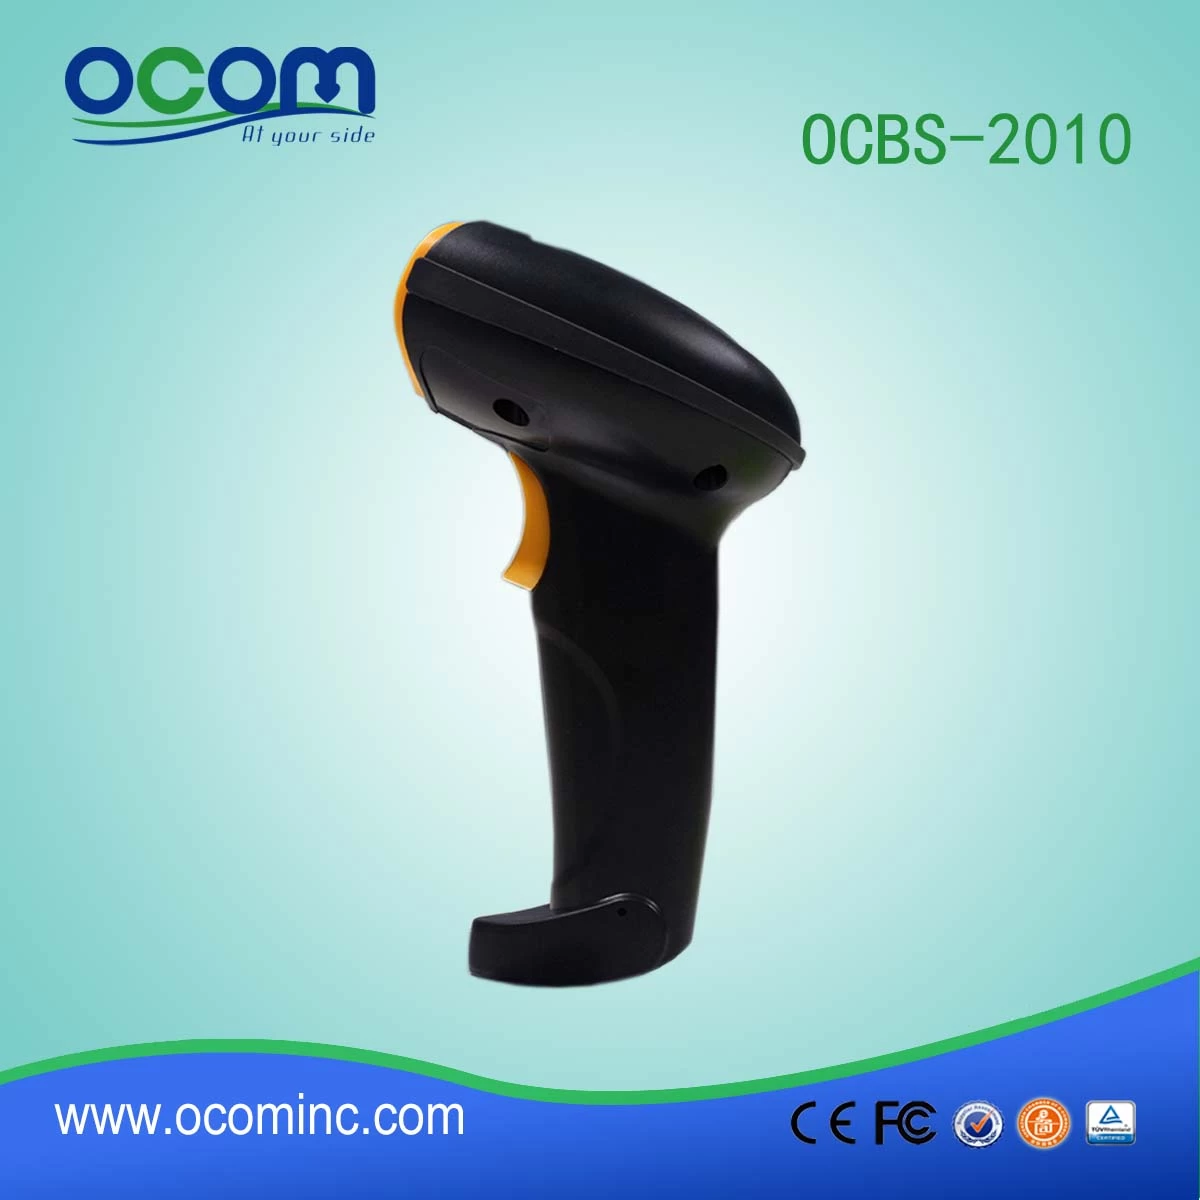 OCBS-2010: Hot Selling Barcode Label Scanner Gun Price